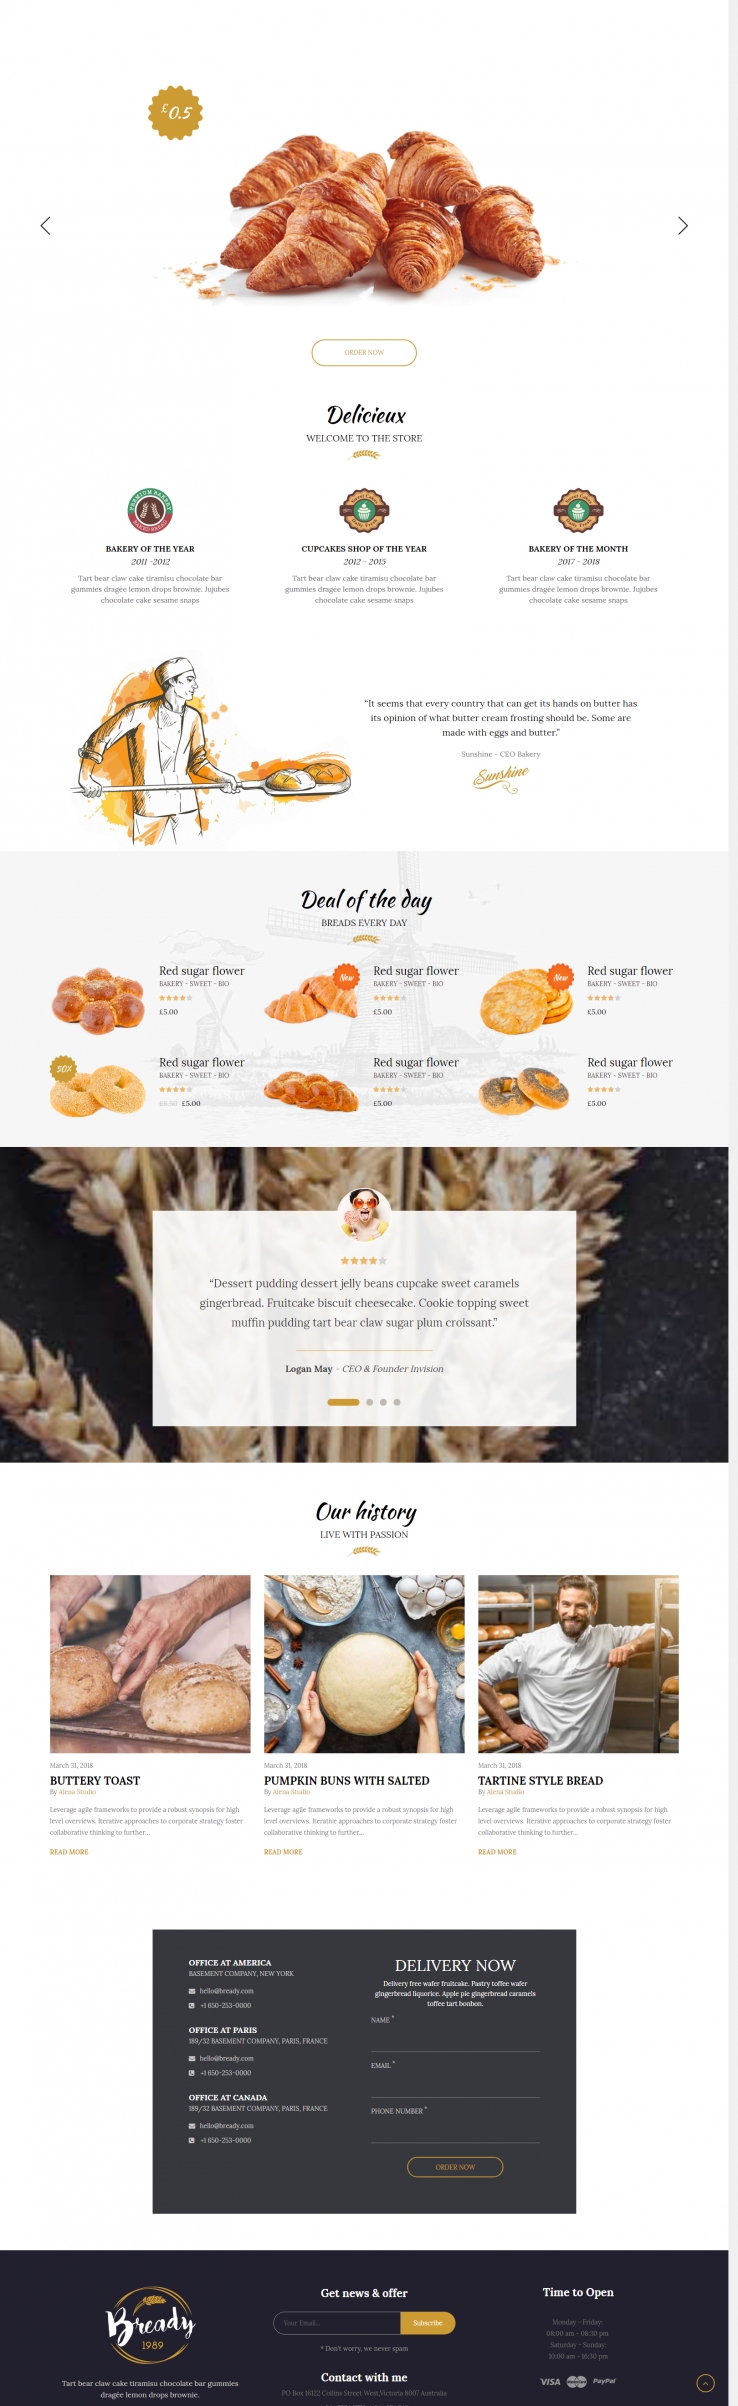 黄色简洁风格的面包店订餐购物企业网站源码下载